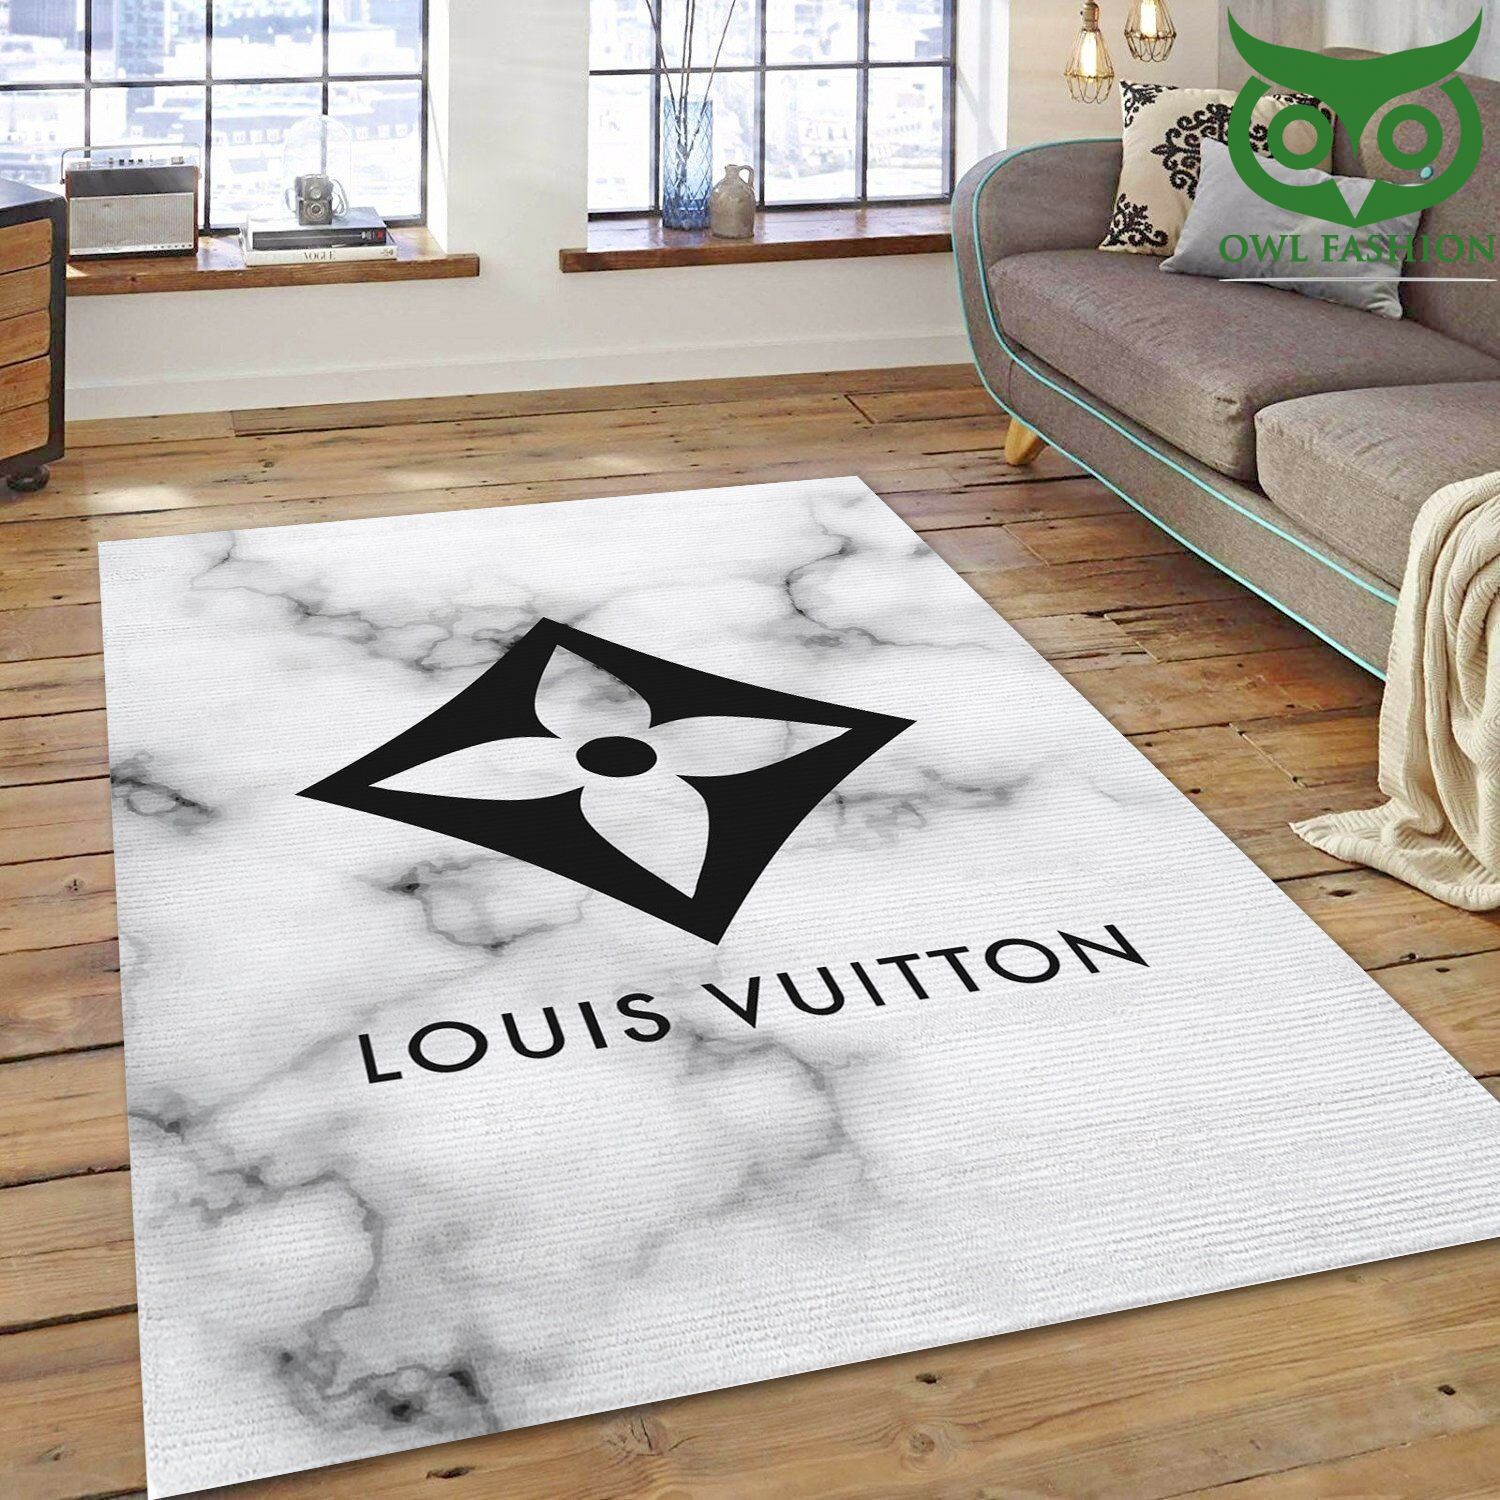 Louis Vuitton Art room decorate floor carpet rug 